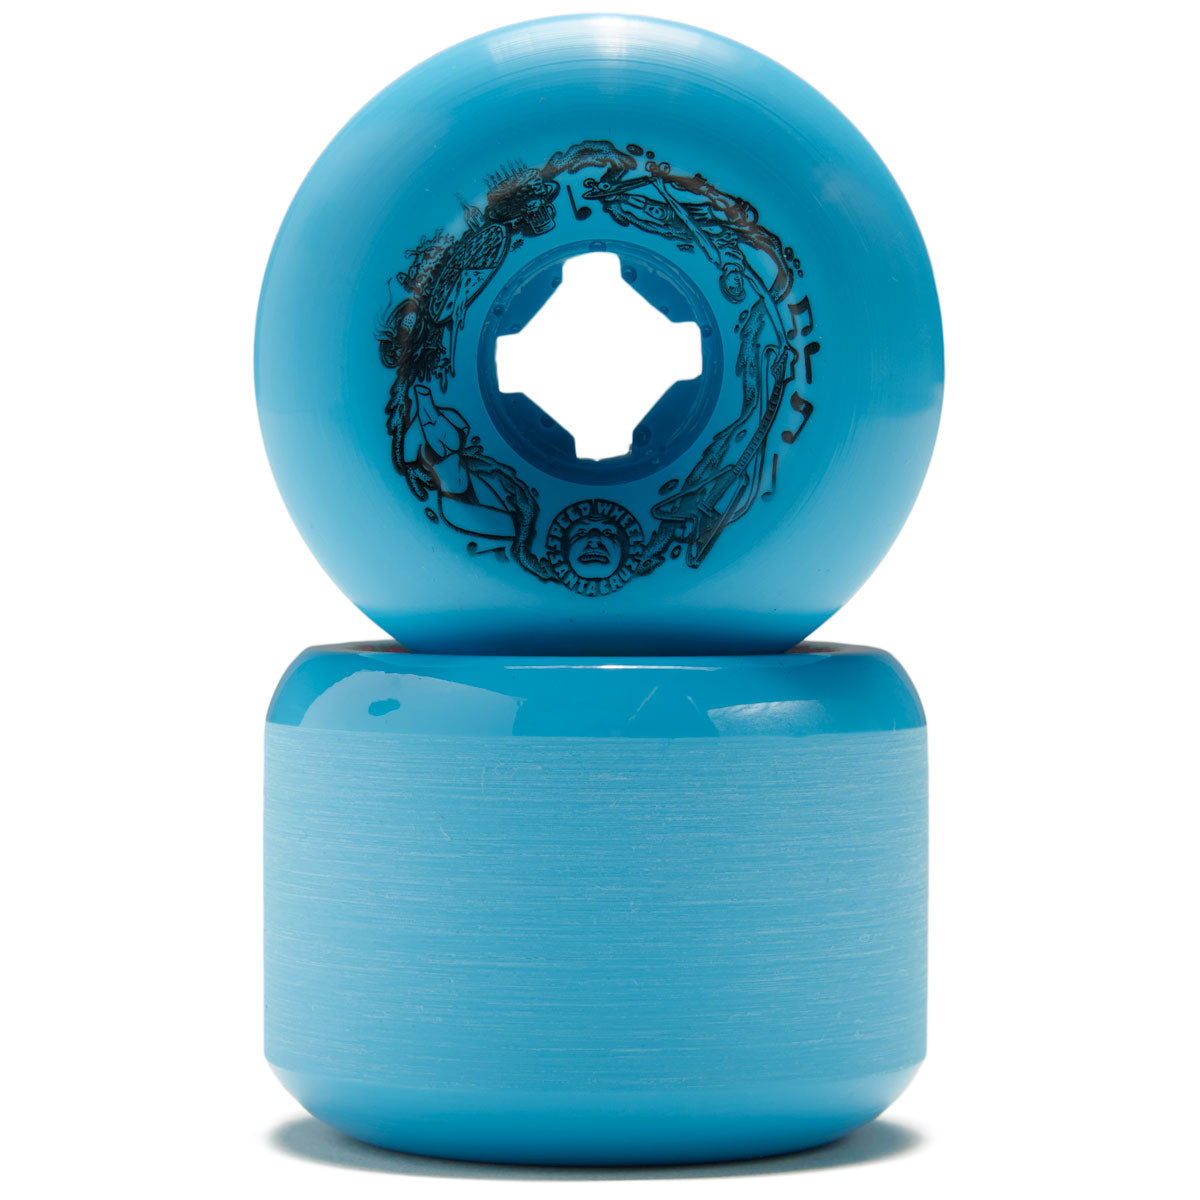 Slime Balls Vomit 97a Skateboard Wheels - Blue - 60mm image 2